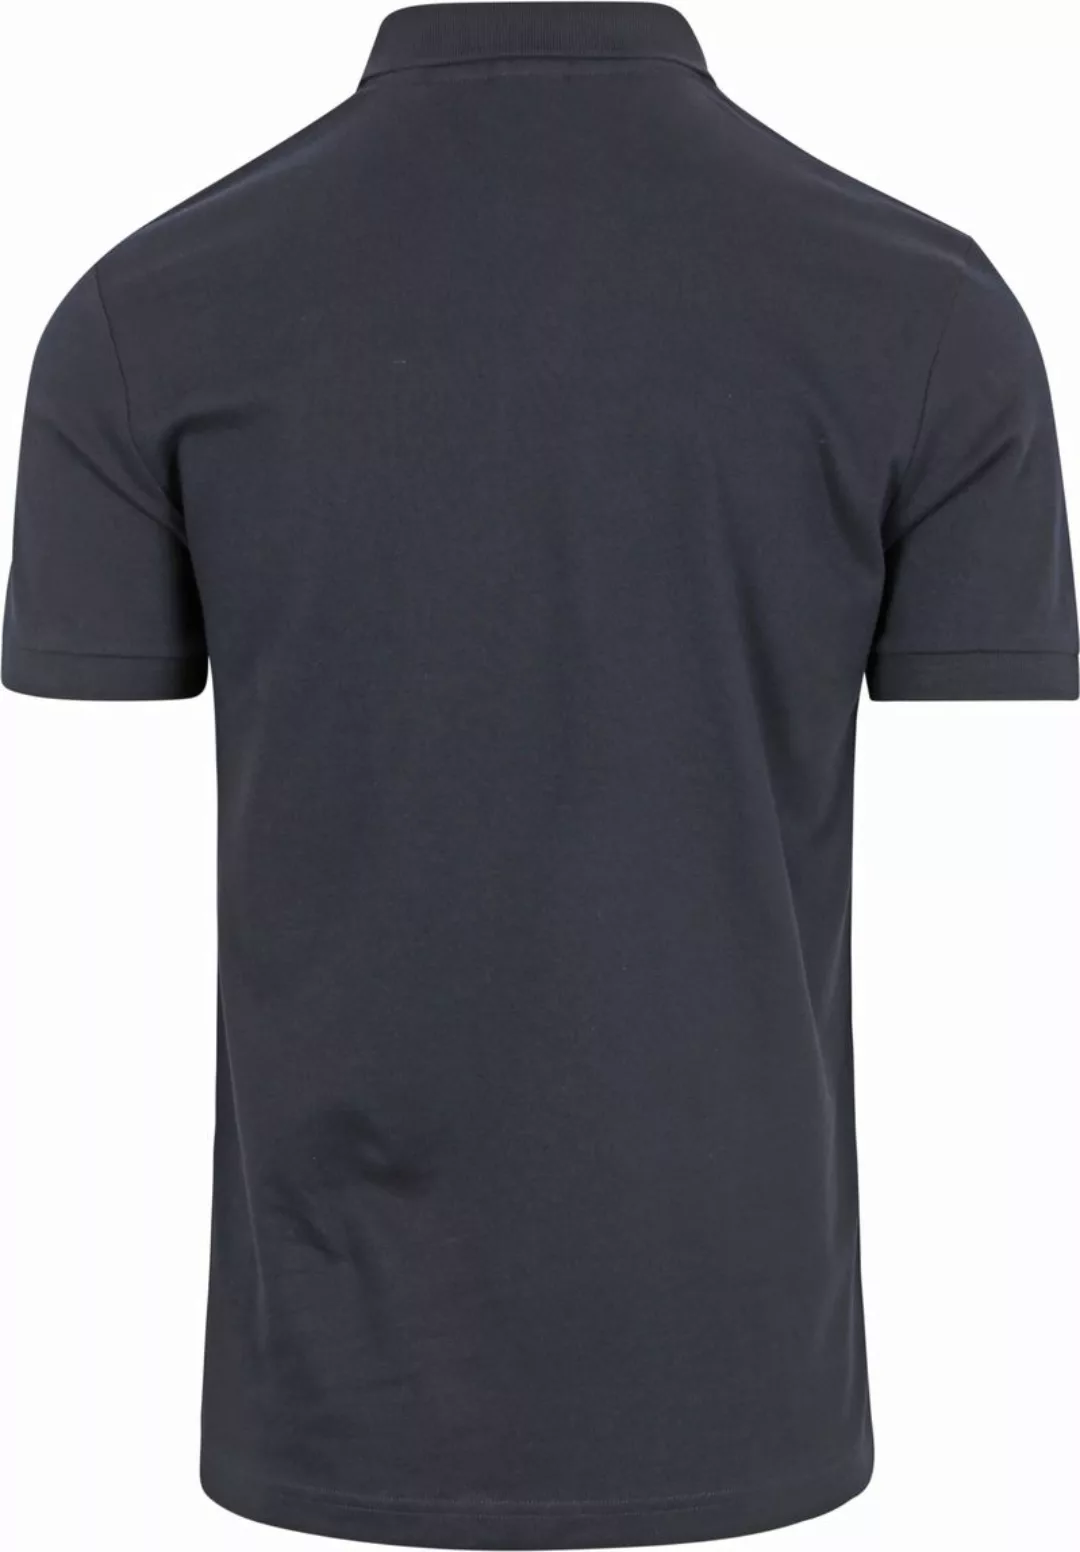 BOSS Polo Shirt Passenger Navy - Größe 3XL günstig online kaufen